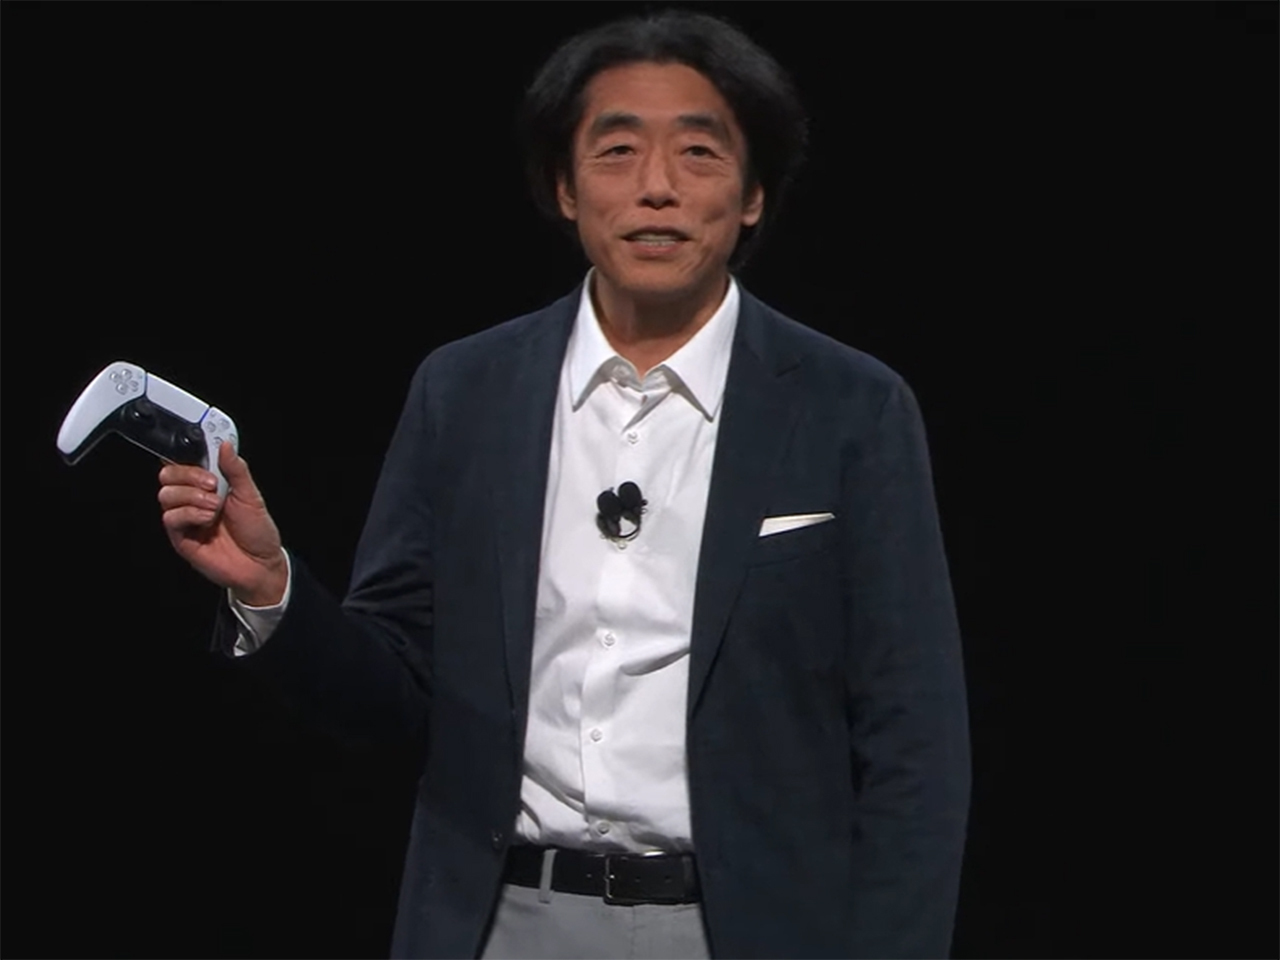 ソニー・ホンダモビリティ 社長兼COOの川西泉氏。PlayStationコントローラを操作して、最新のプロトタイプであるAFEELAをステージに登場させた